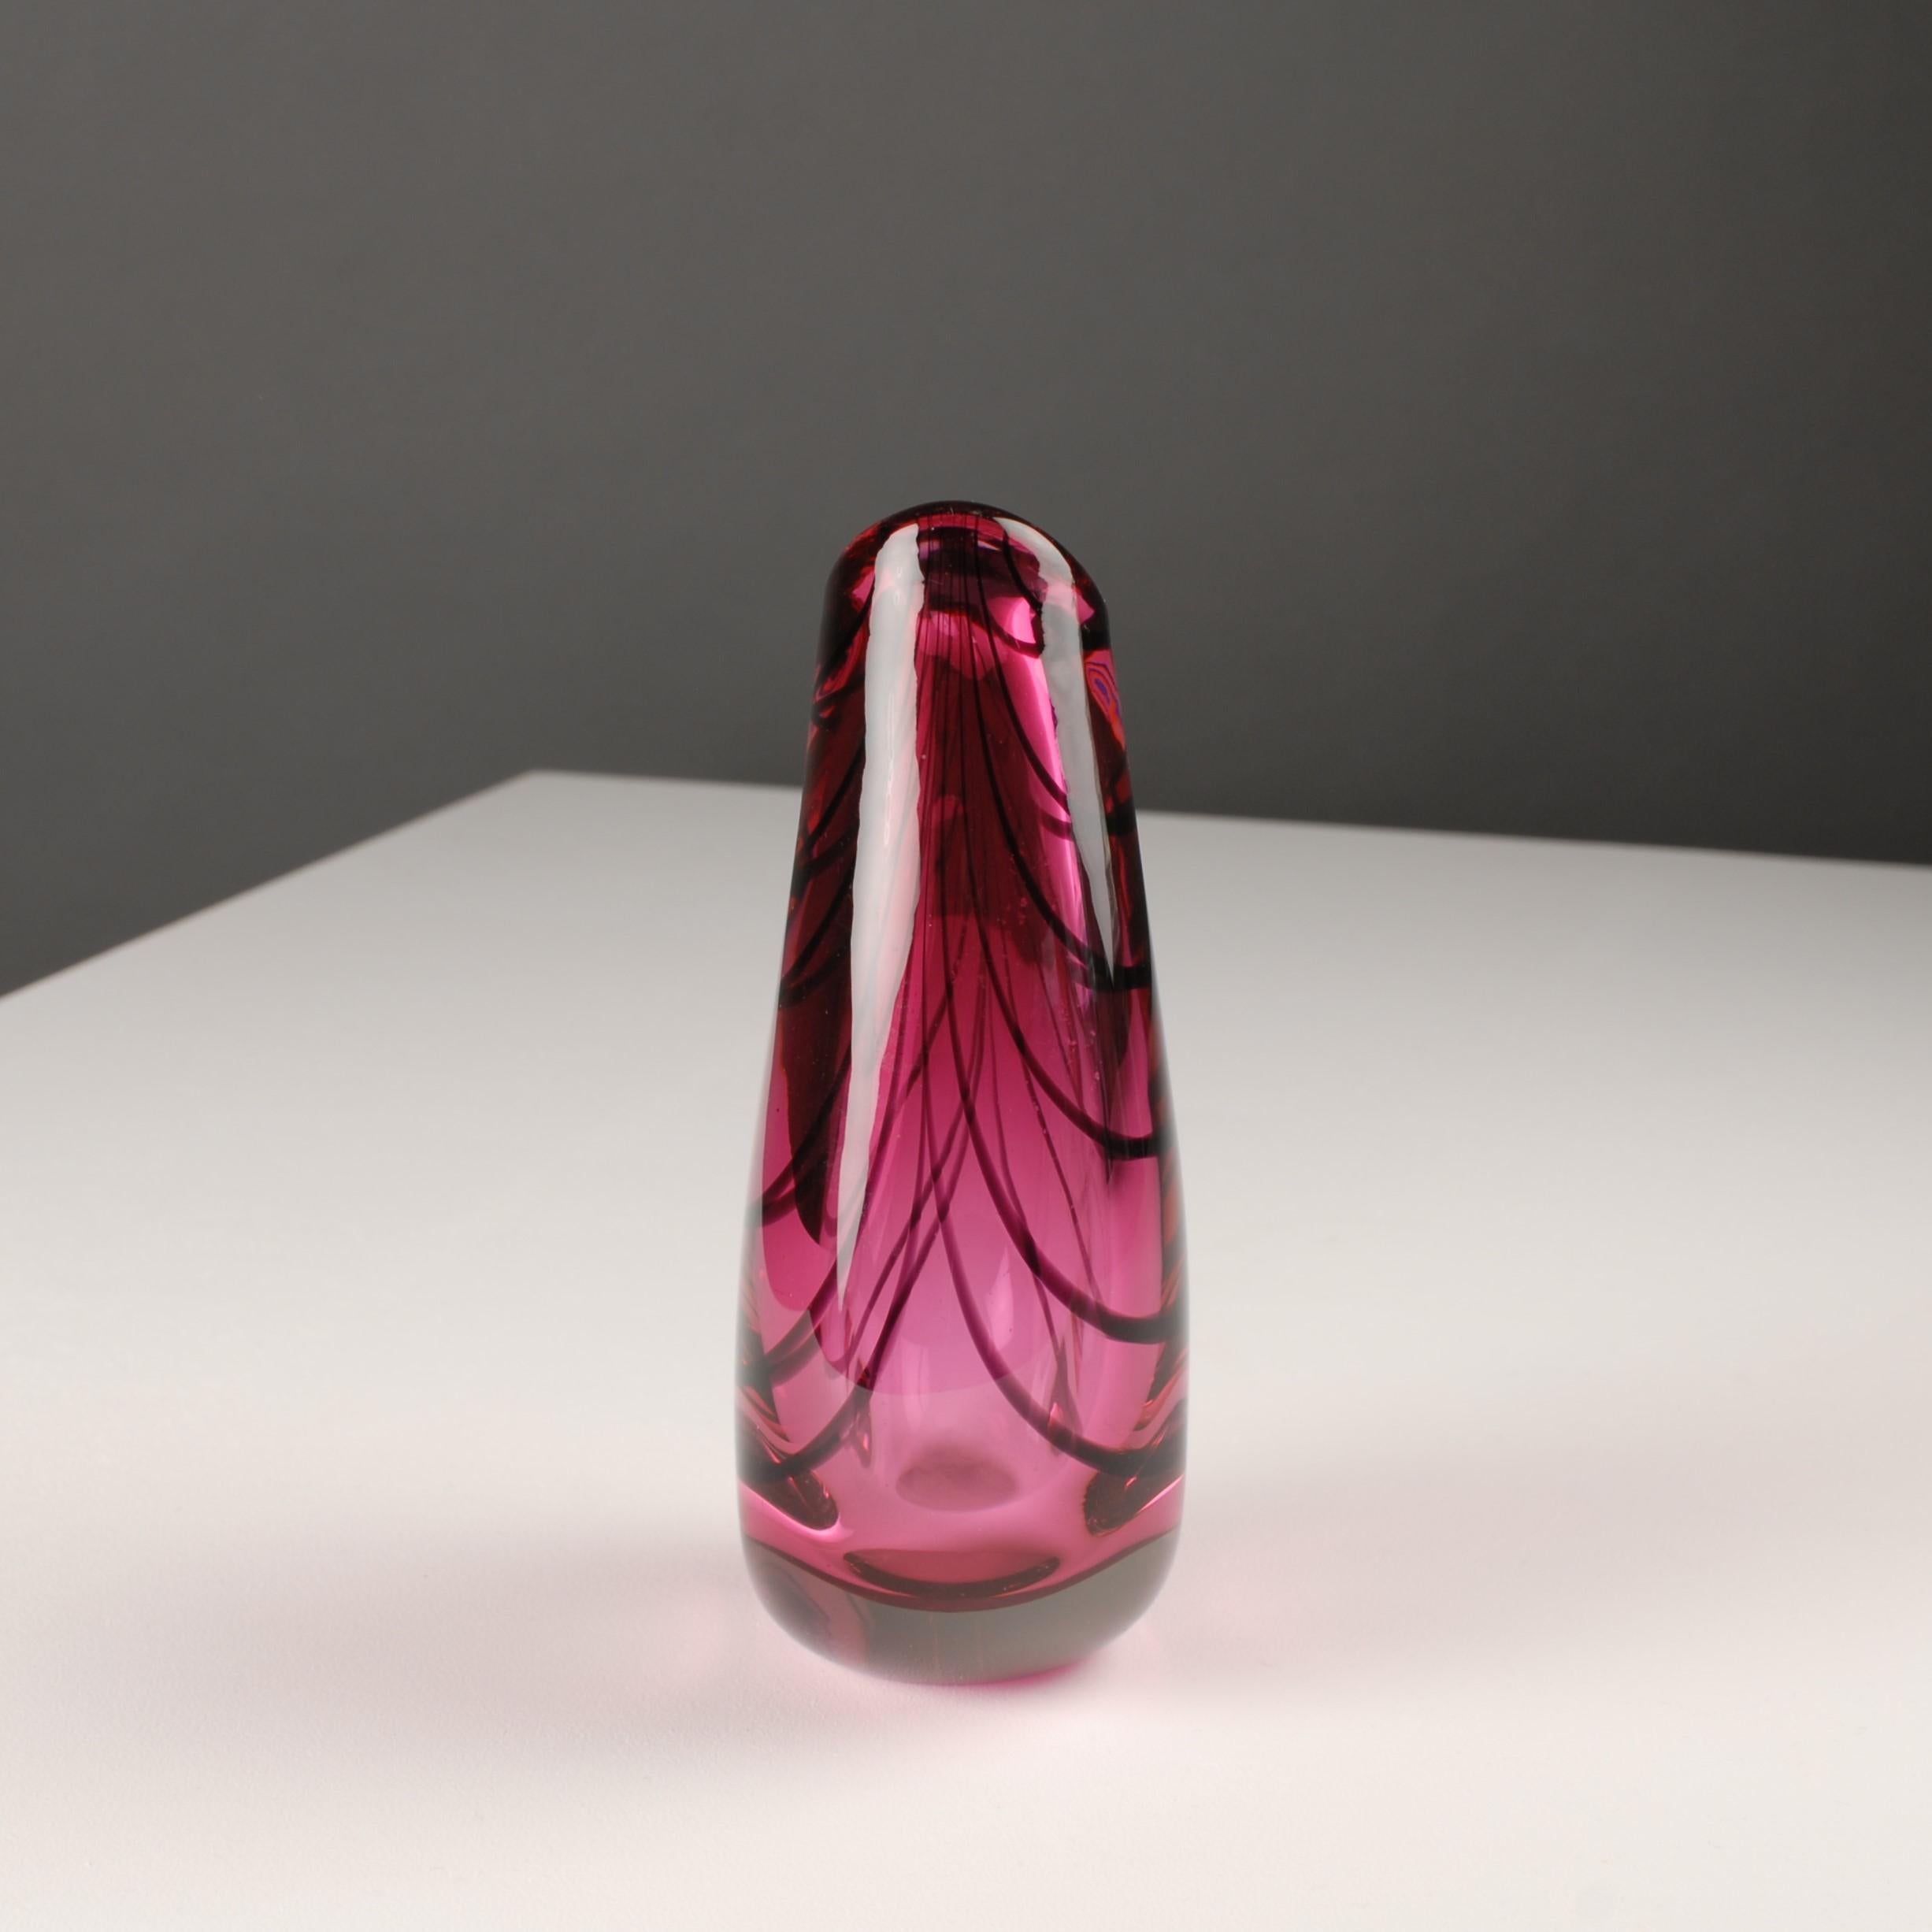 Norwegian Midcentury Scandinavian Modern Glass Art Vase Deco Pink Red Magnor Vase Norway For Sale